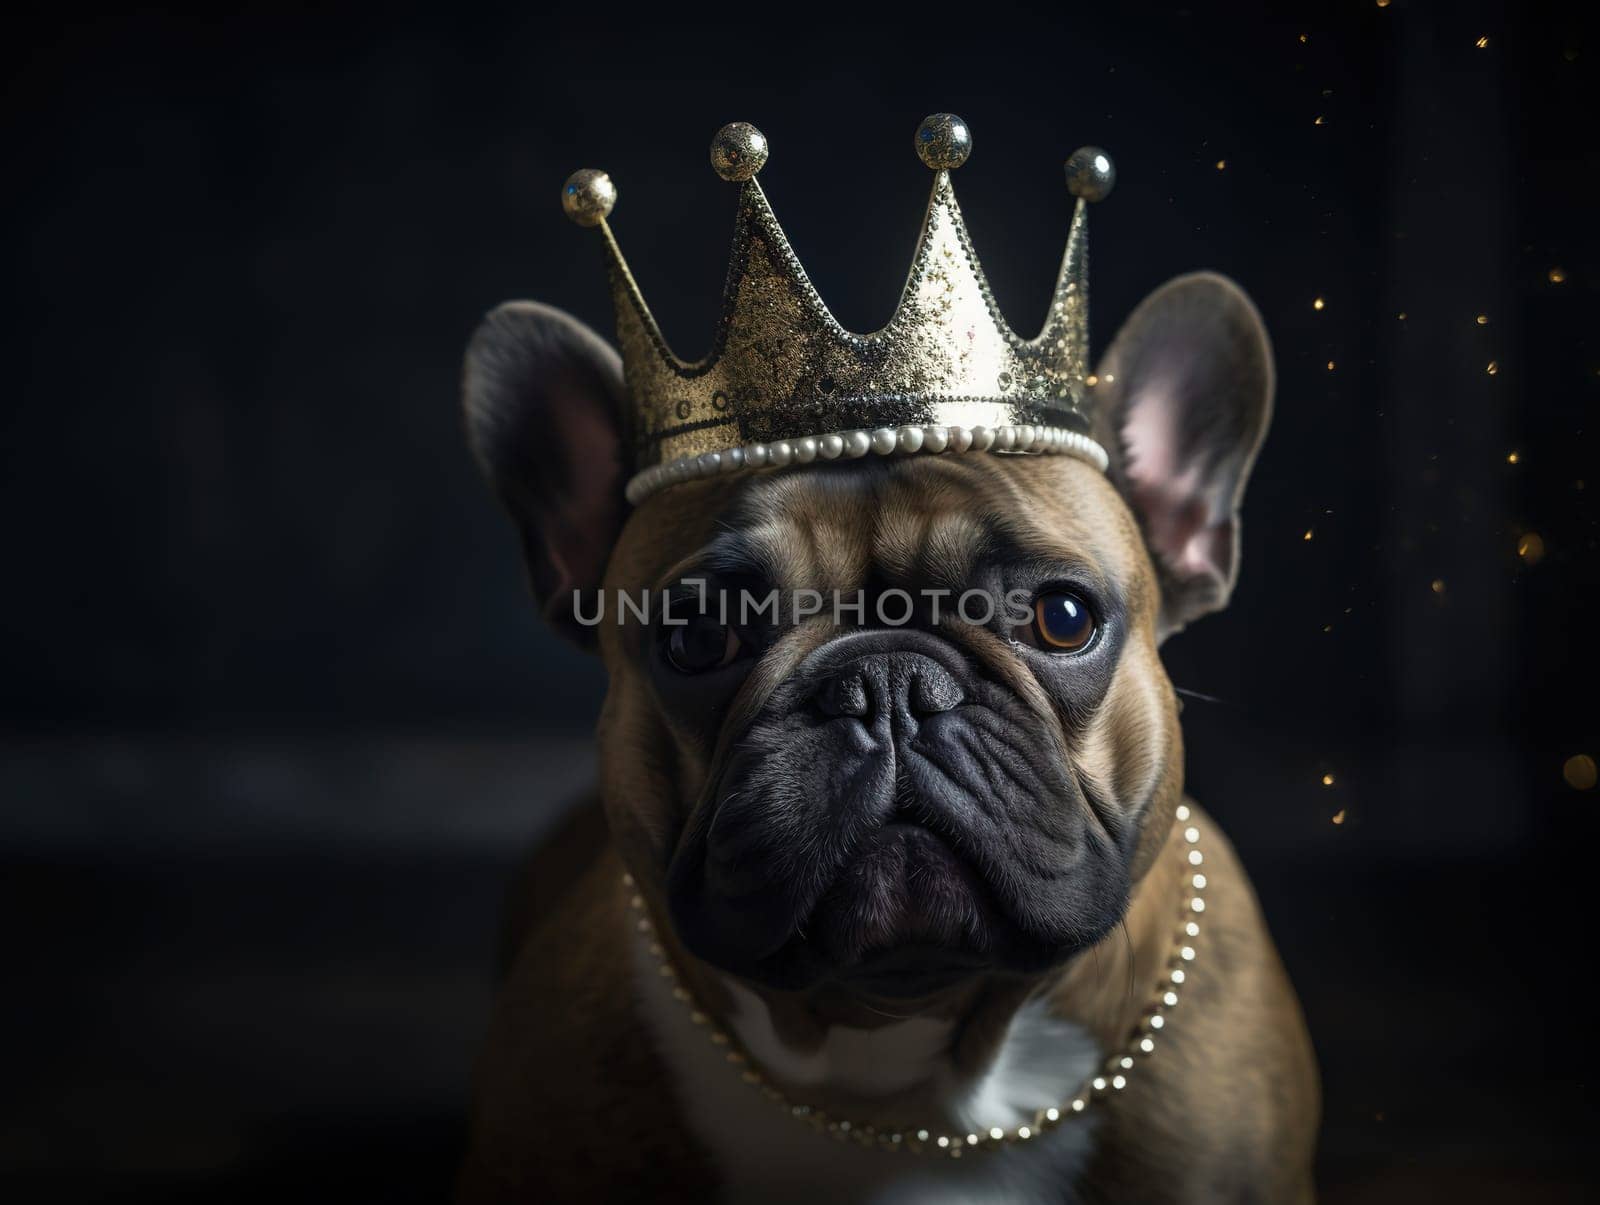 Dog In Carnival Crown by GekaSkr